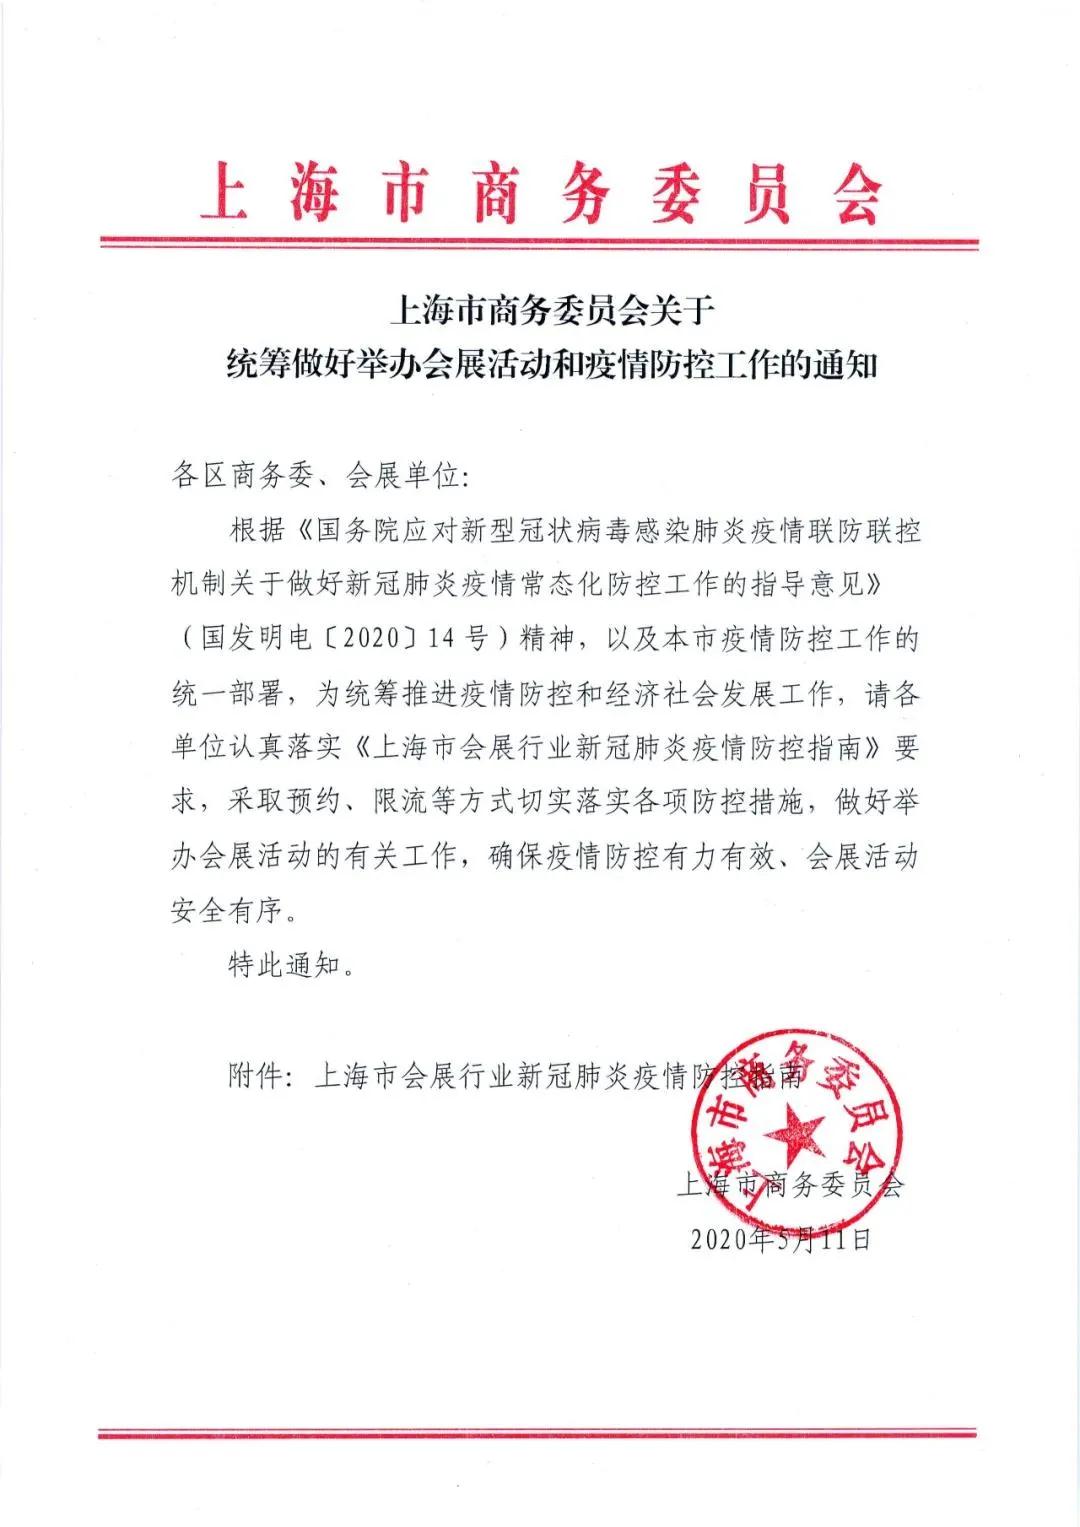 上海市商务委员会关于统筹做好举办会展活动和防疫防控工作的通知(图1)